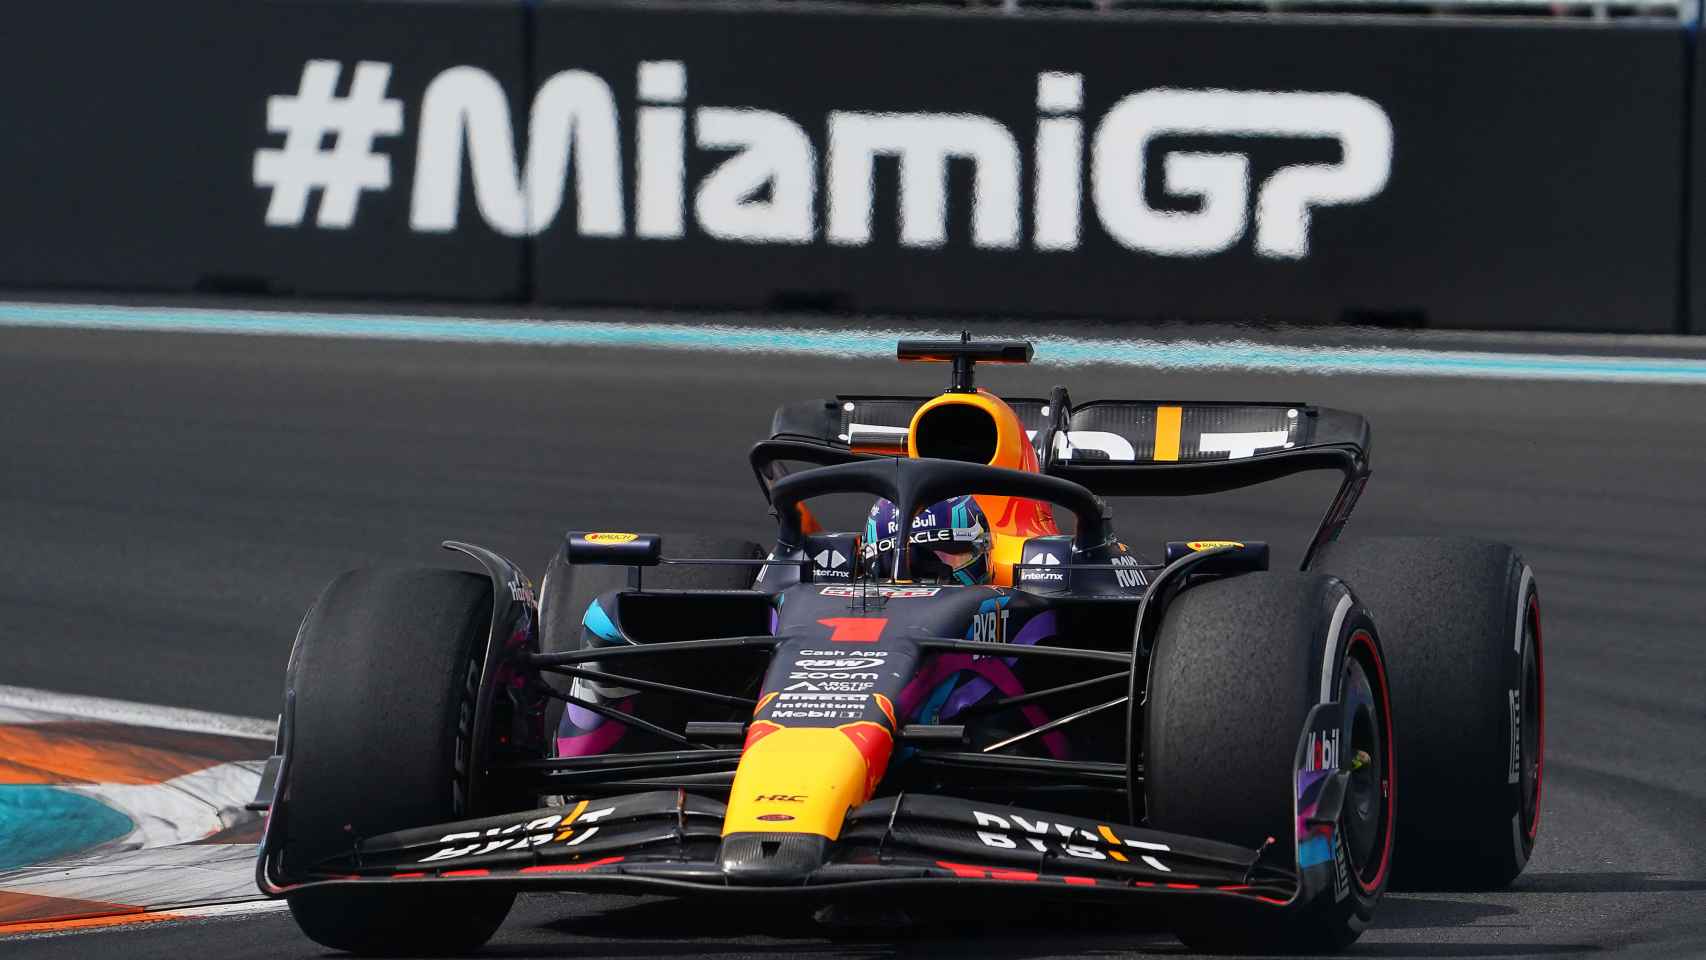 Max Verstappen, durante el GP de Miami